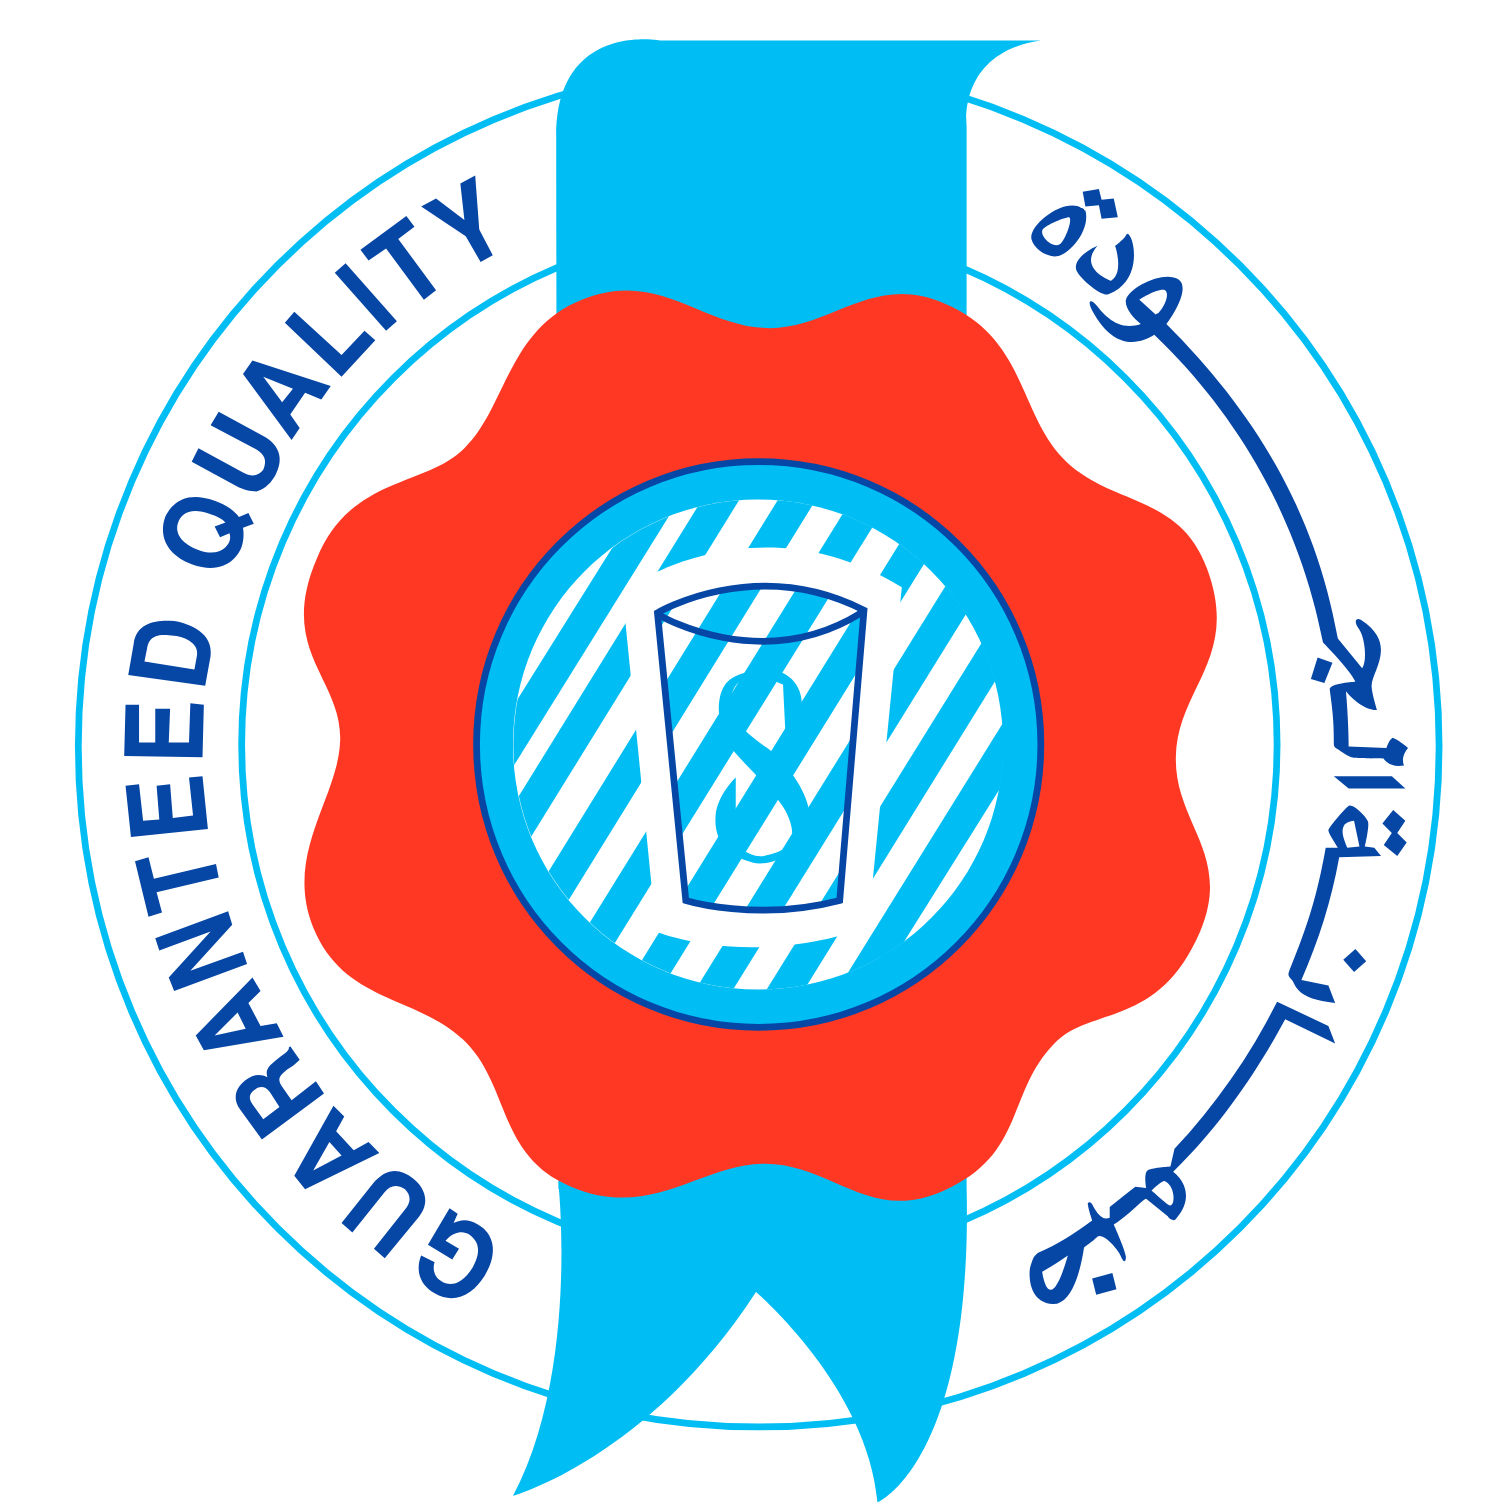 Saudia Dairy & Foodstuff Company logo (PNG transparent)